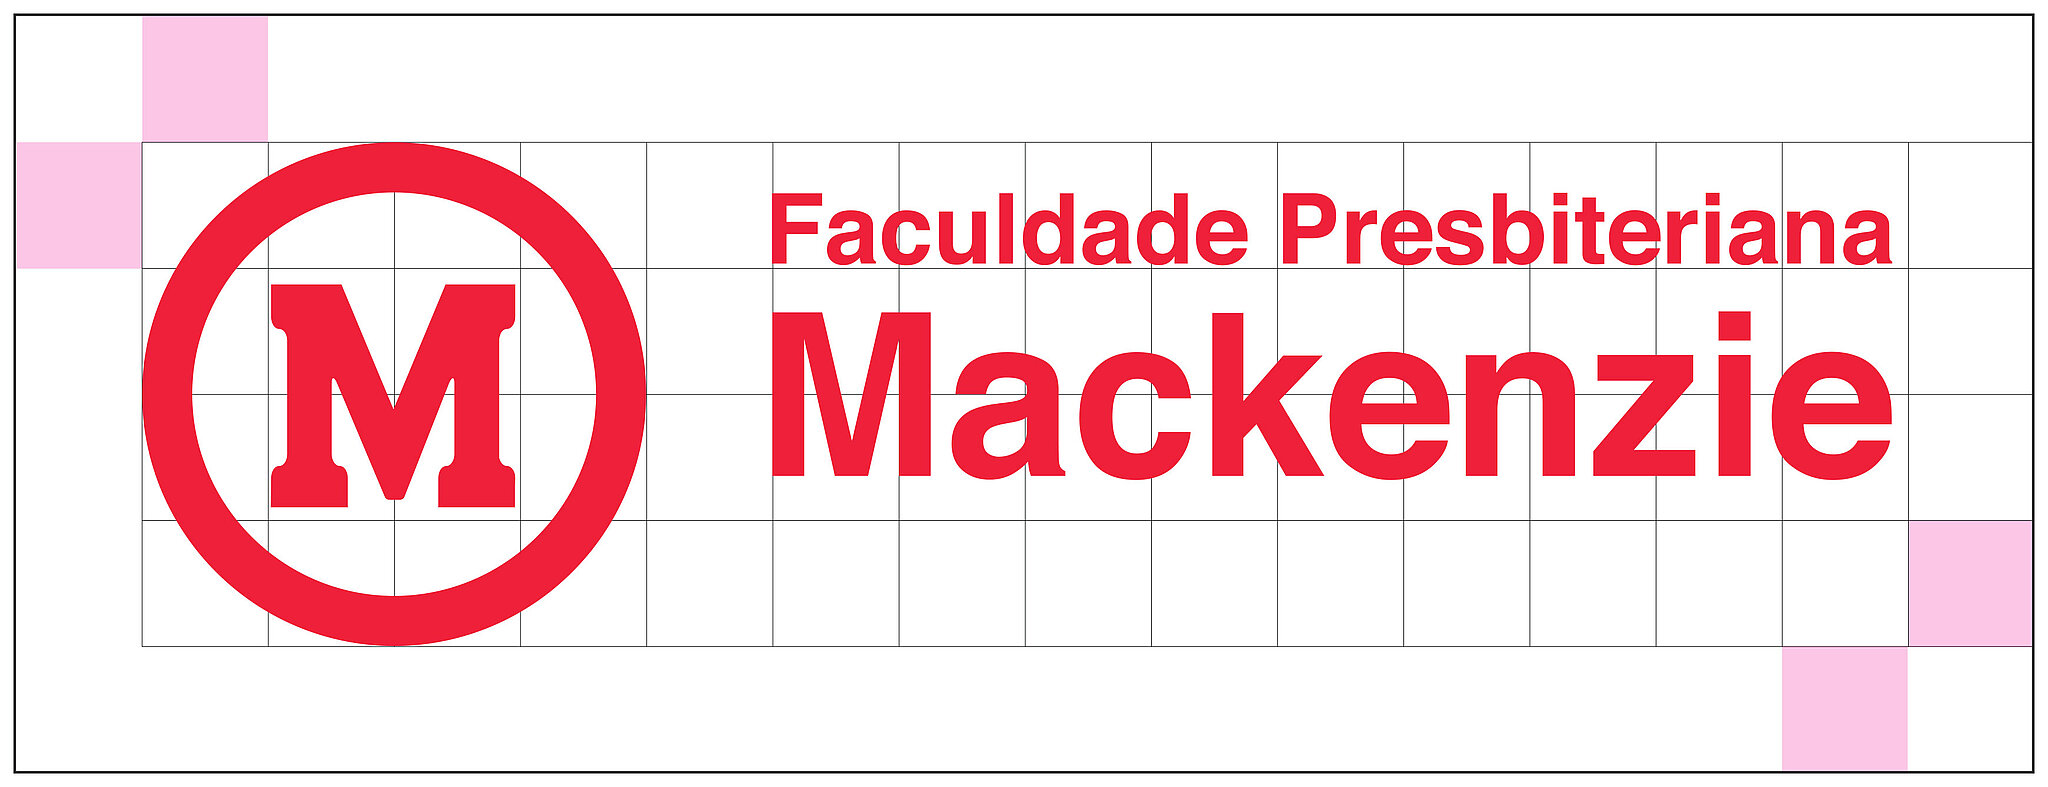 Logo da Faculdade Presbiteriana Mackenzie